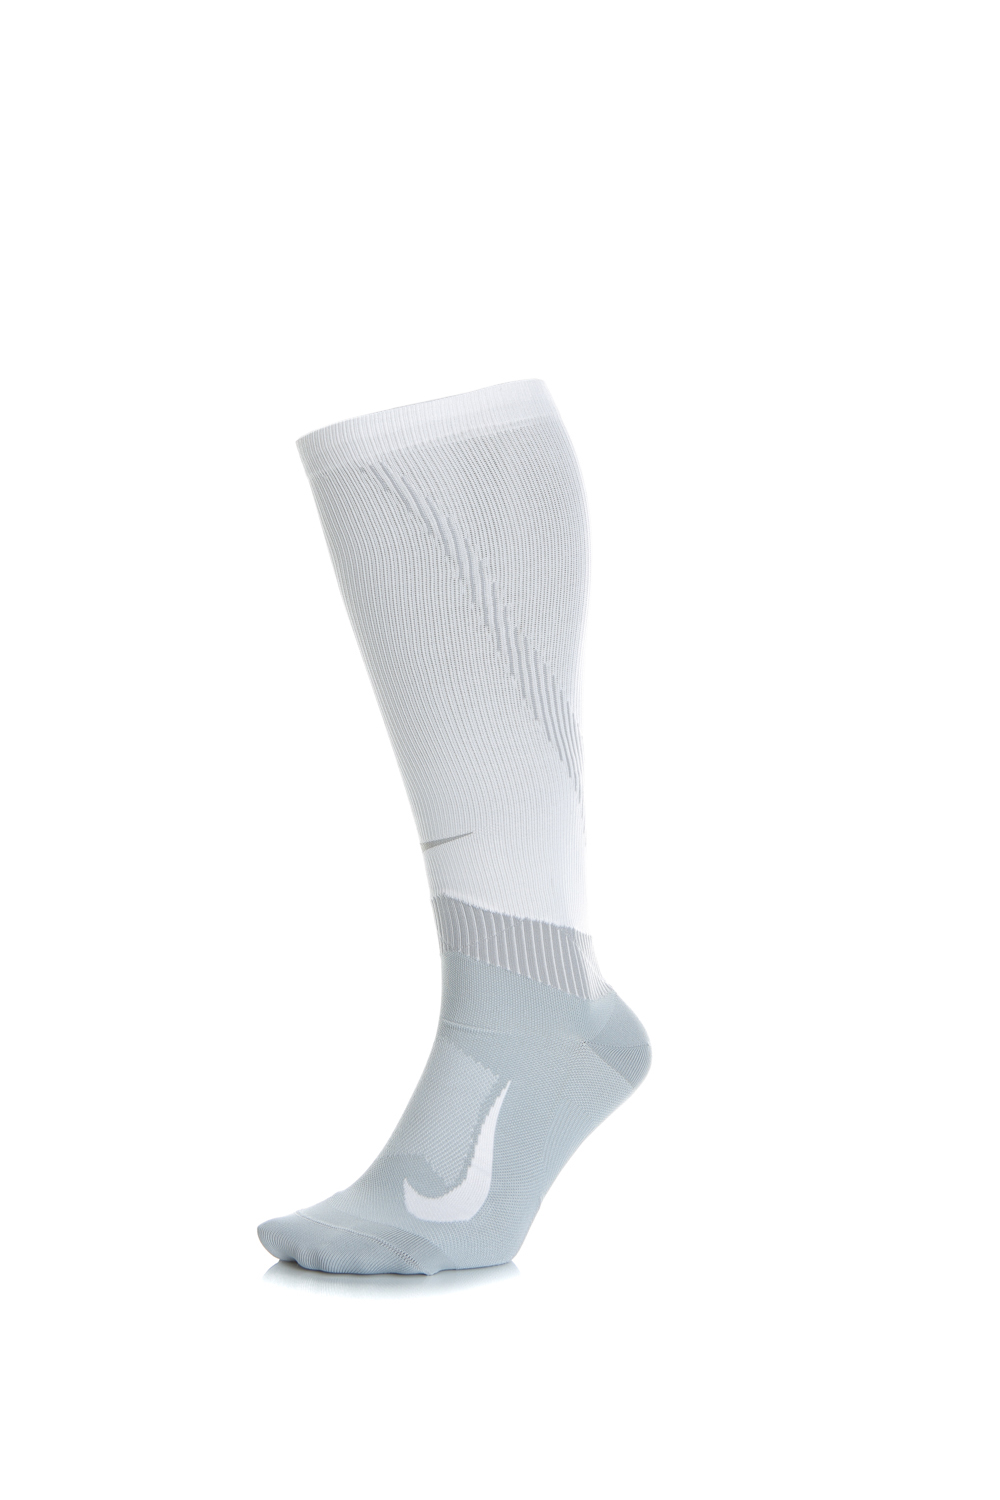 NIKE Unisex κάλτσες NIKE SPARK COMP λευκές